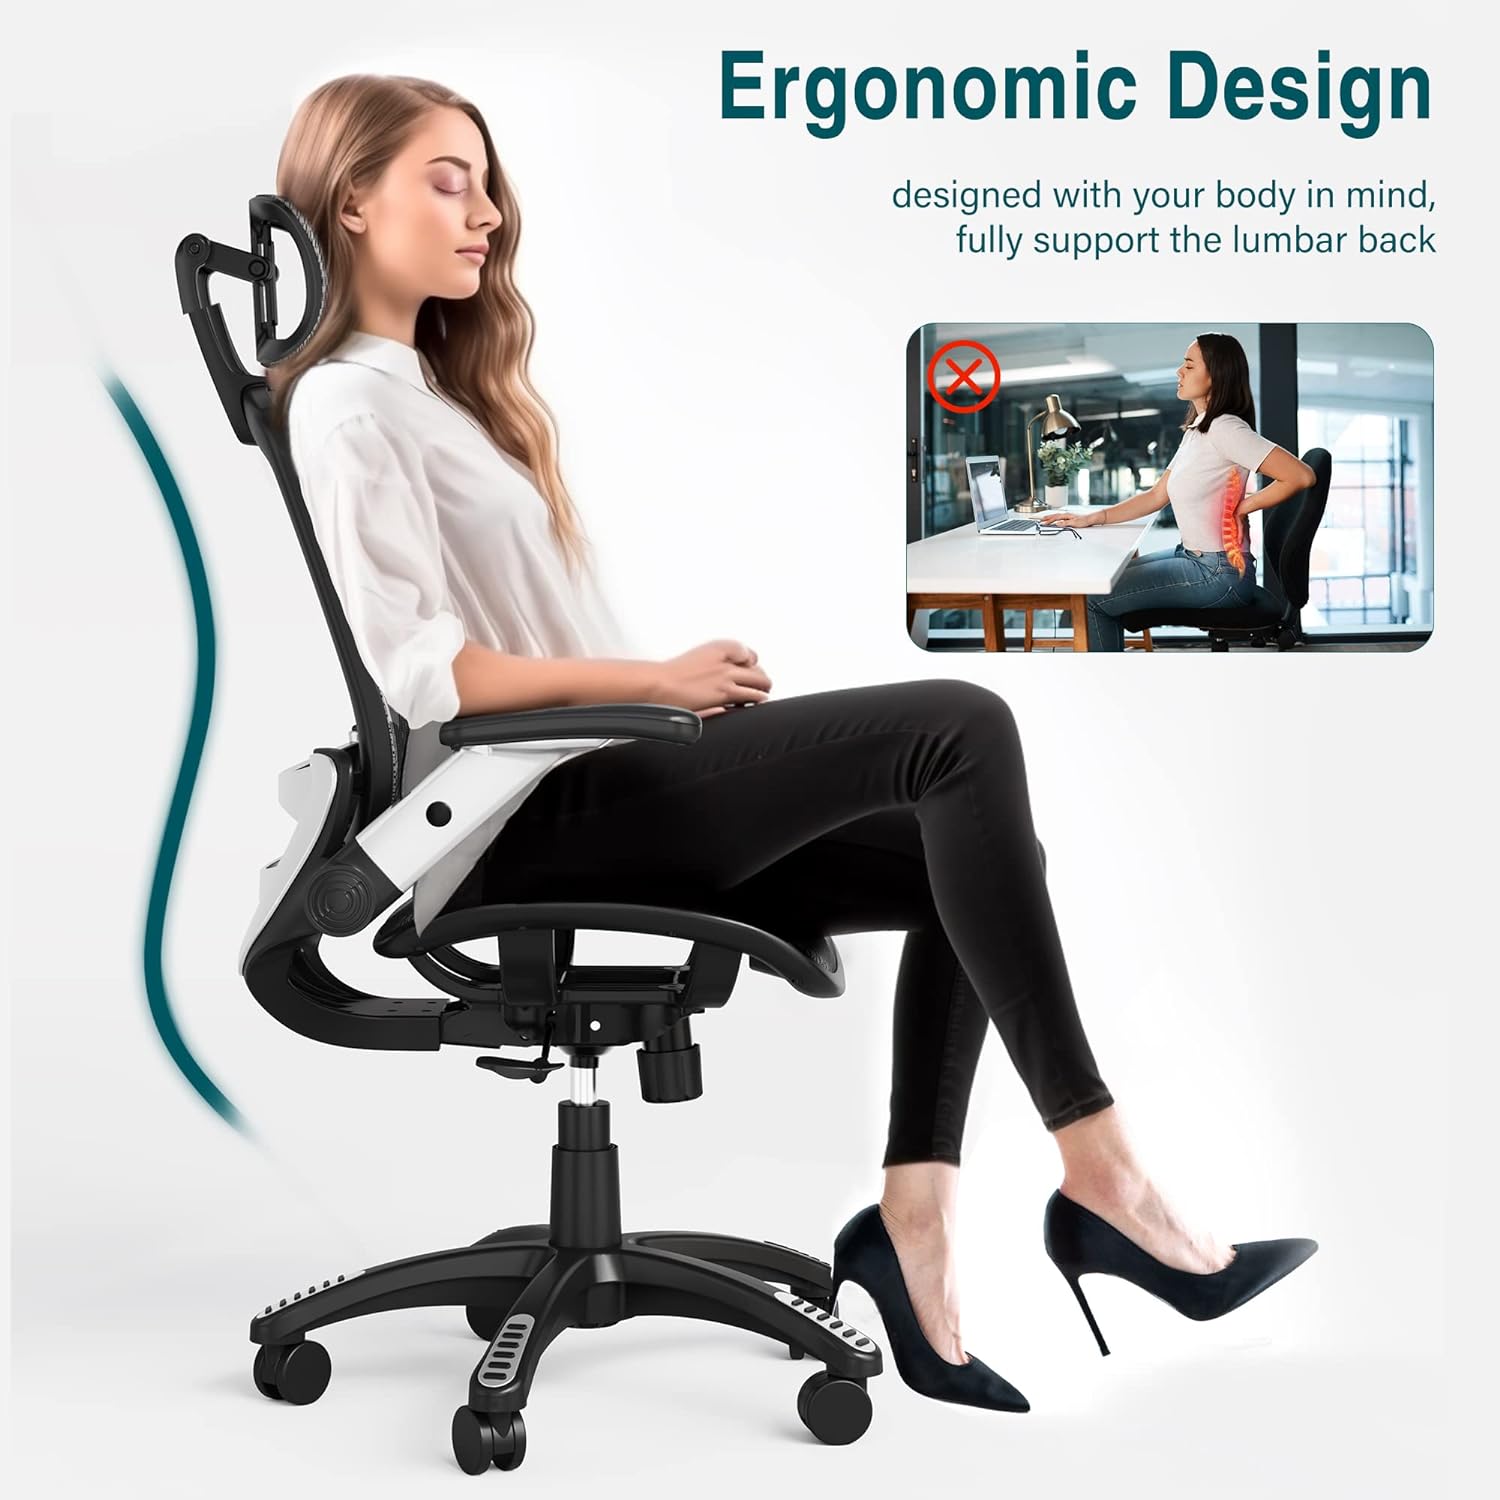 GABRYLLY Silla de oficina ergonómica de malla, silla de escritorio con  respaldo alto, reposacabezas ajustable con brazos abatibles, función de